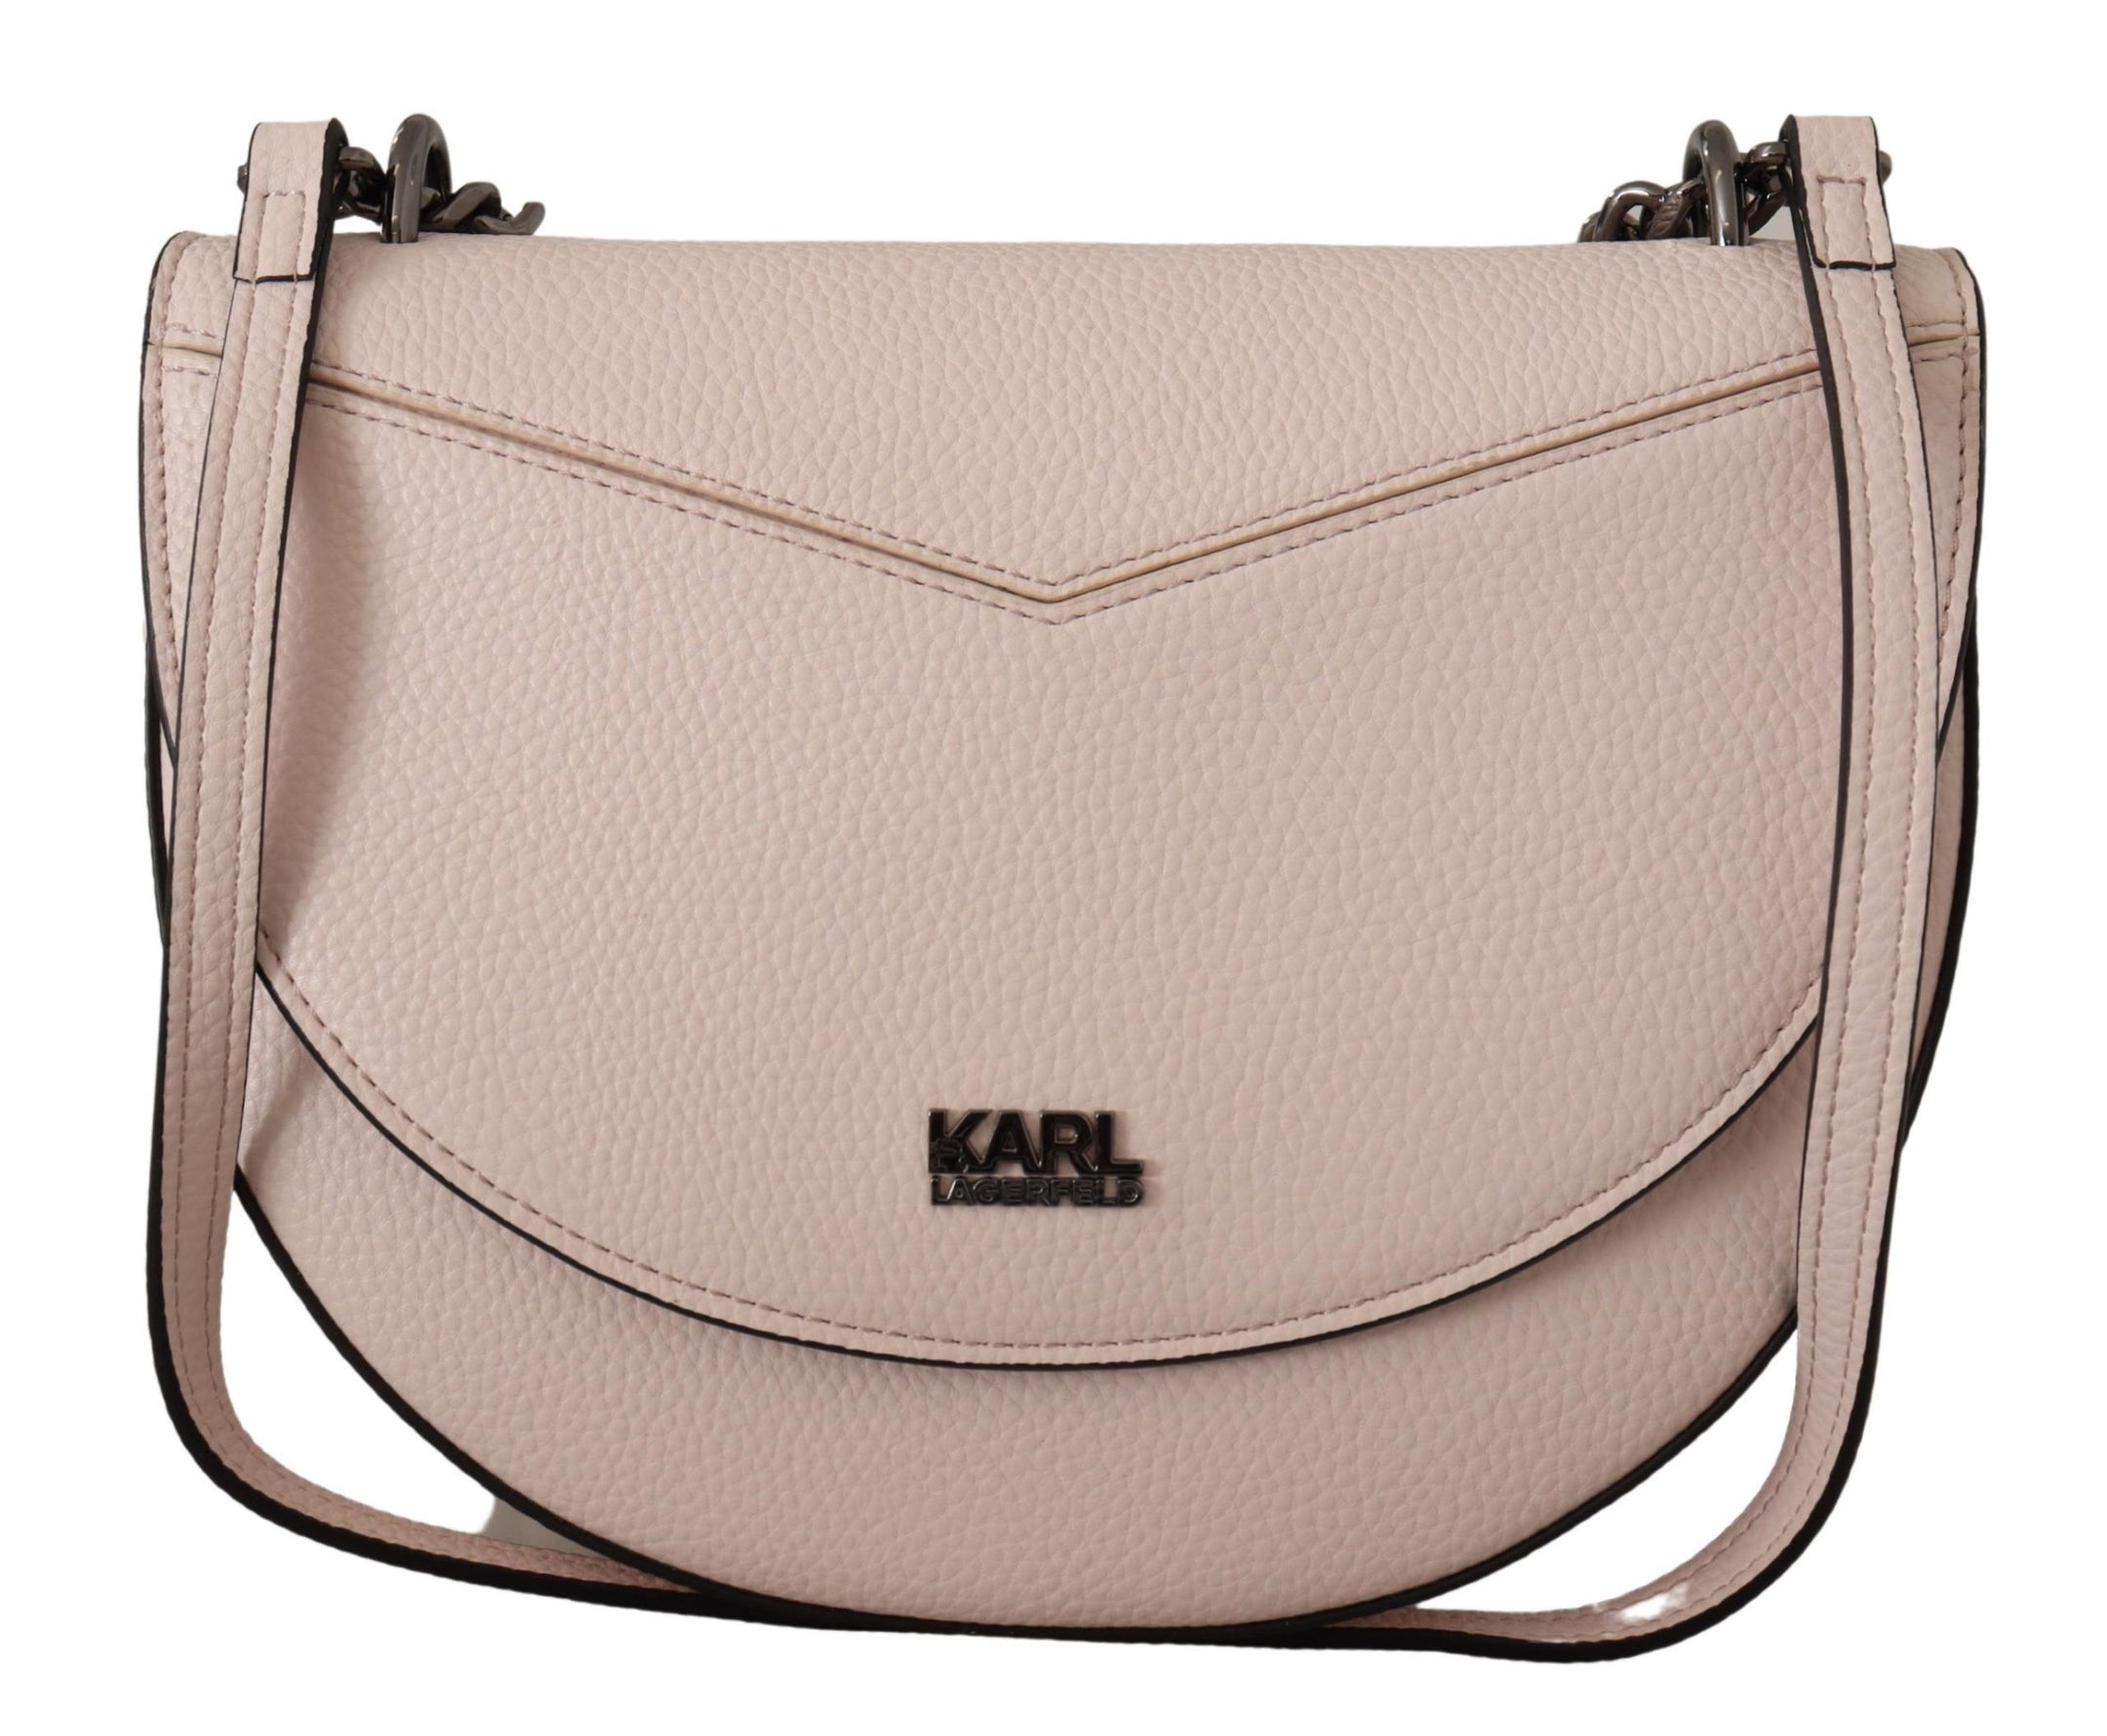 Elegant Mauve Light Pink Leather Shoulder Bag